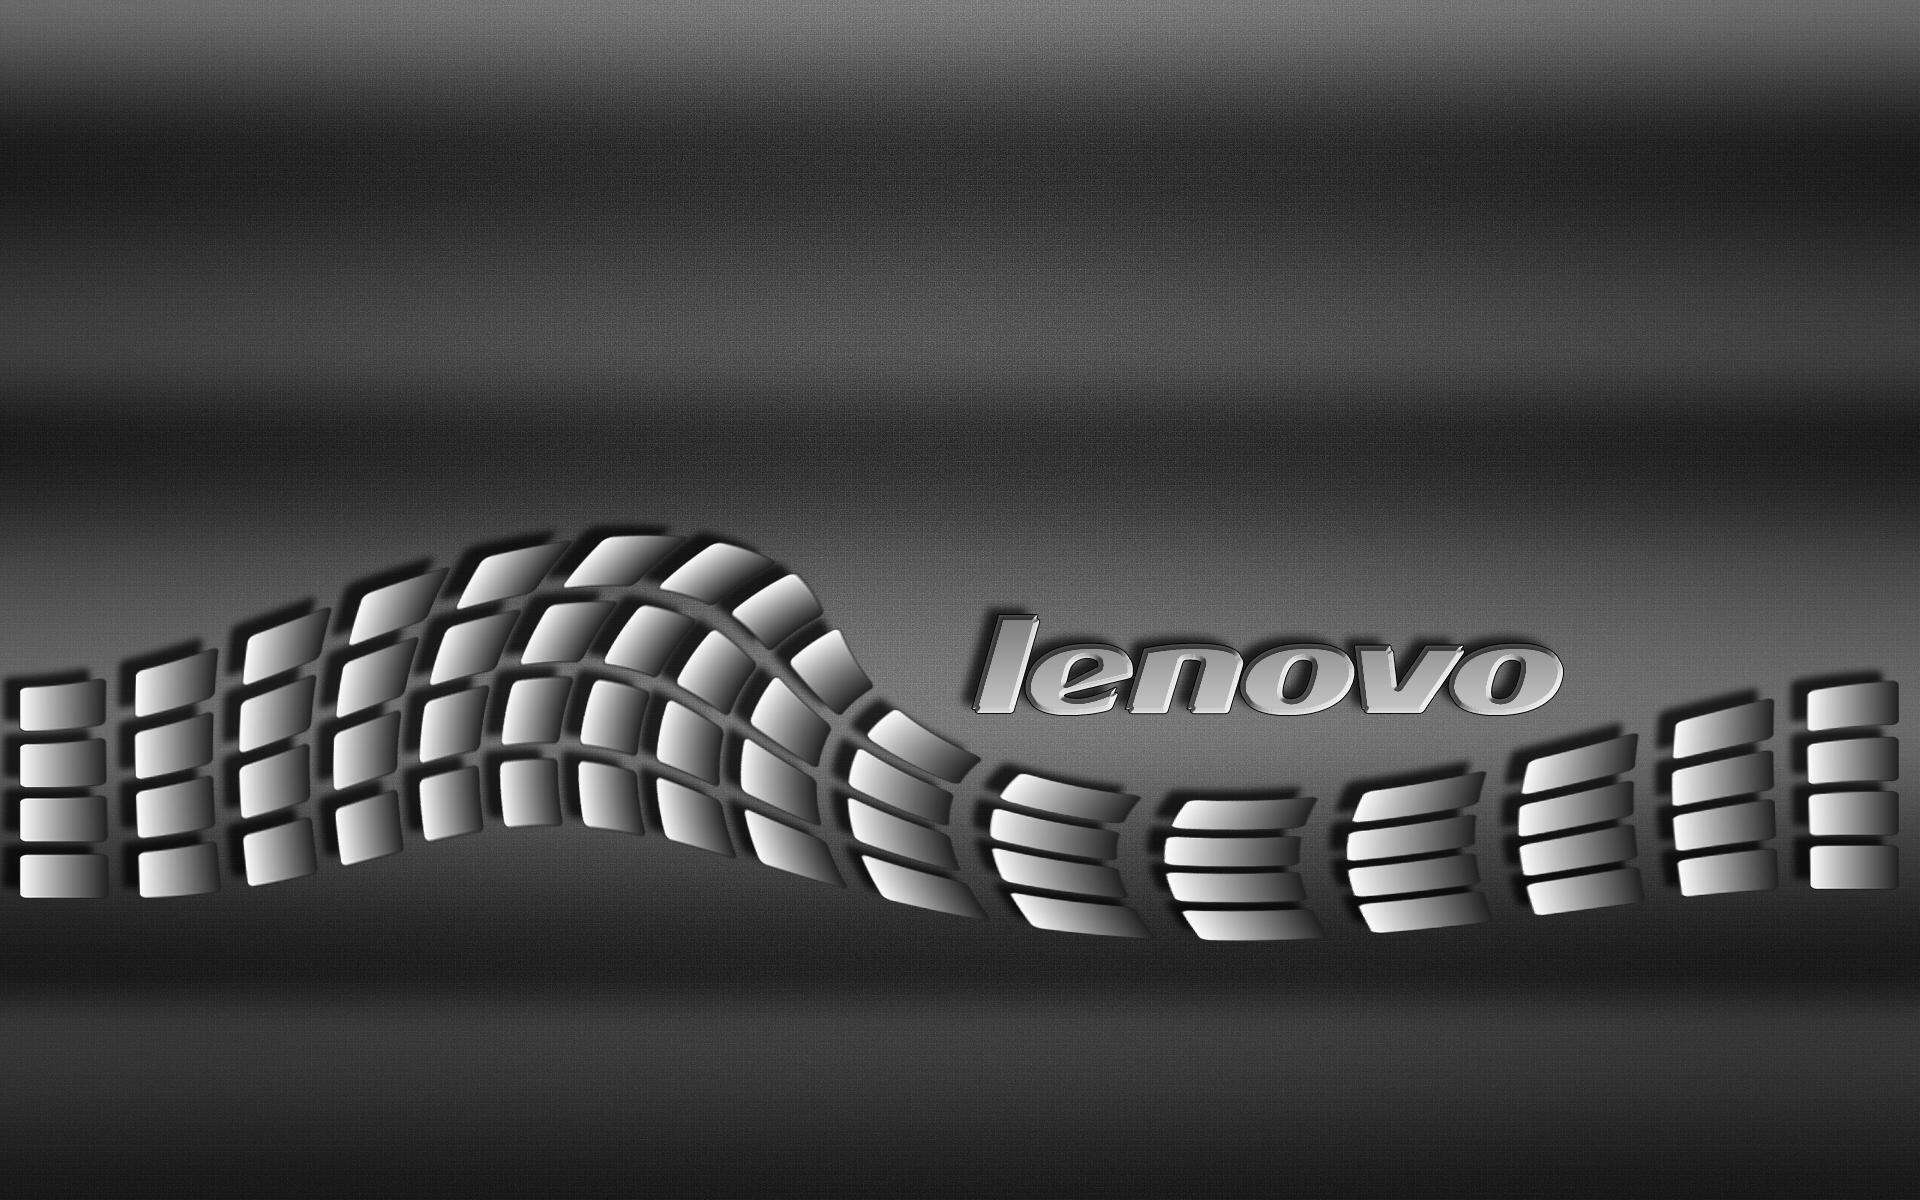 For: Lenovo Wallpaper, 1920x1200 px